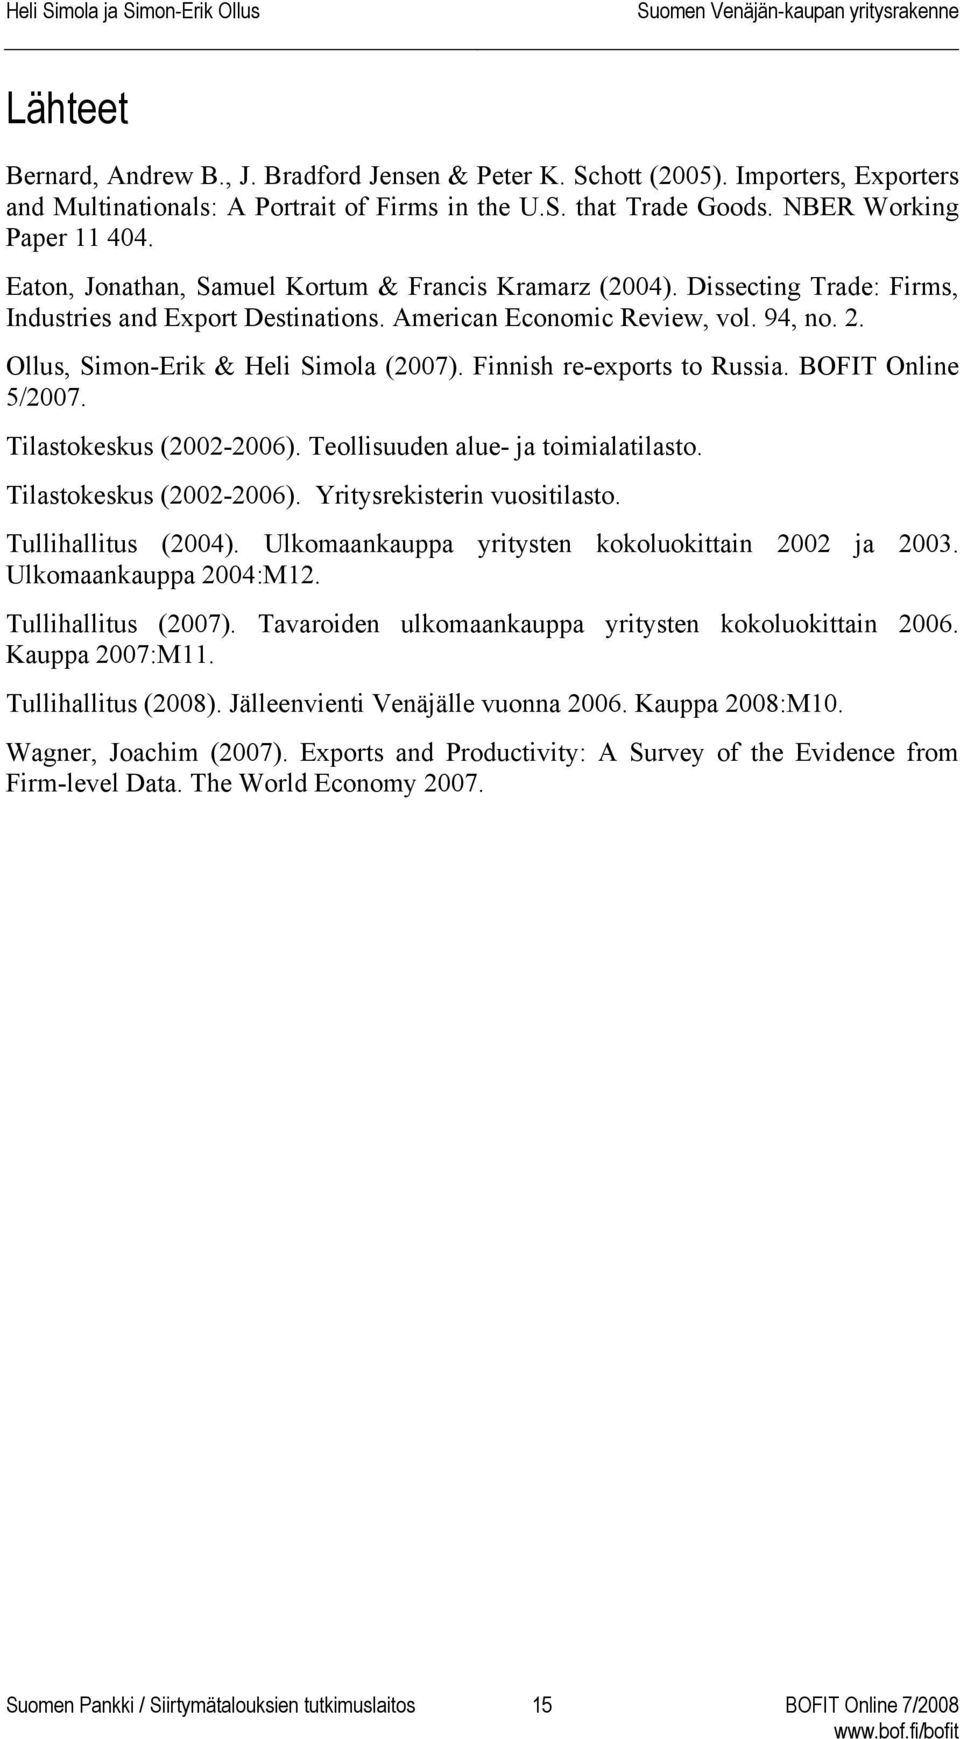 Finnish re-exports to Russia. BOFIT Online 5/2007. Tilastokeskus (2002-2006). Teollisuuden alue- ja toimialatilasto. Tilastokeskus (2002-2006). Yritysrekisterin vuositilasto. Tullihallitus (2004).